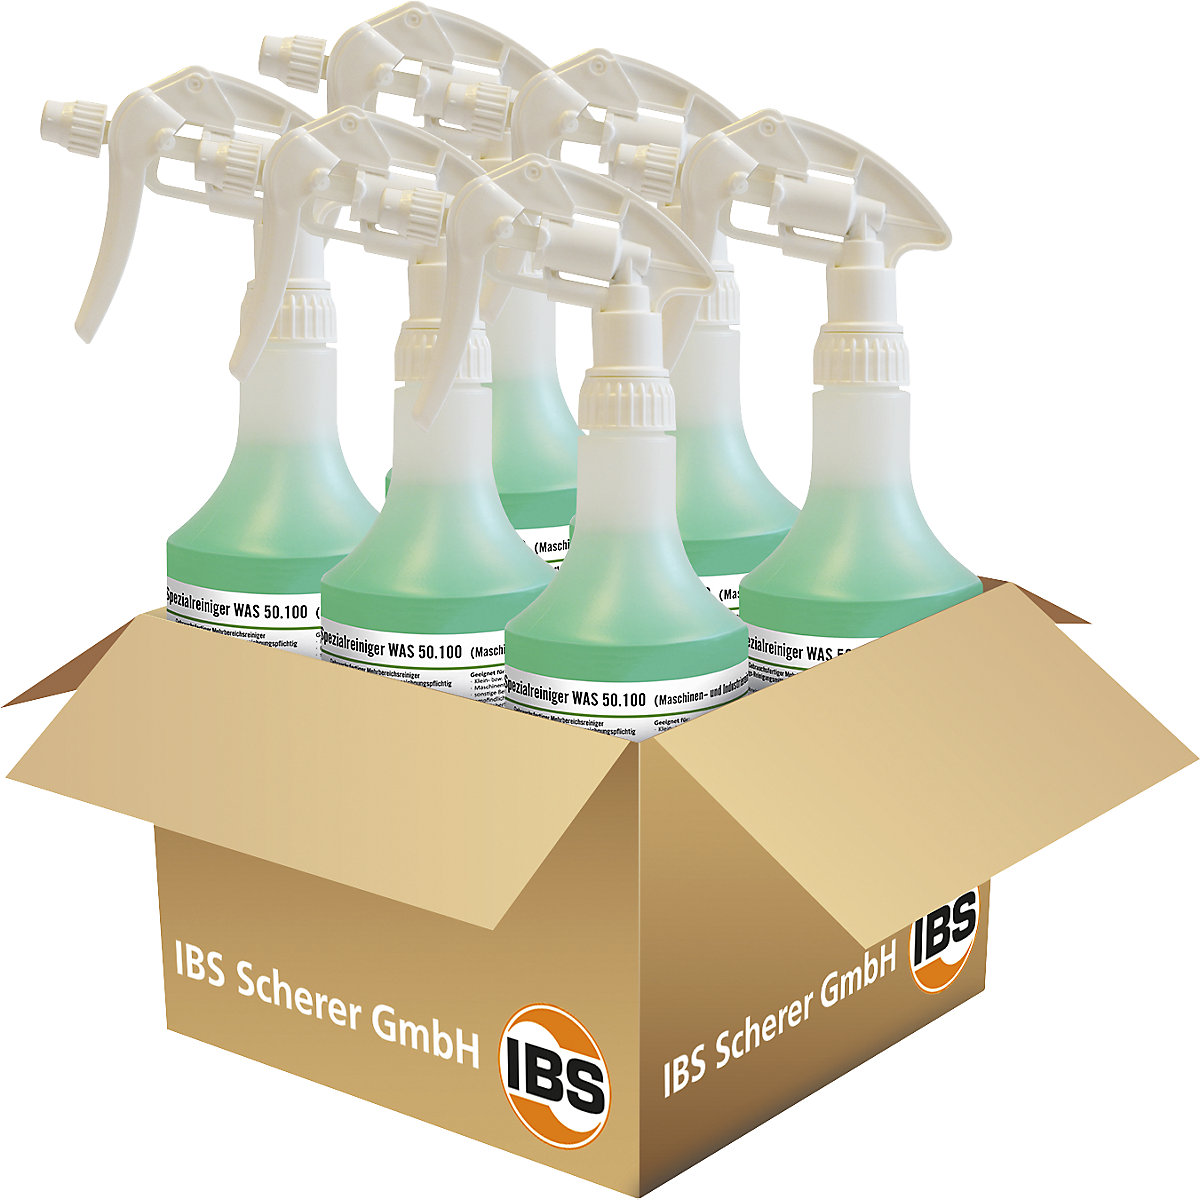 Detergente industriale/per macchine WAS 50.100 - IBS Scherer